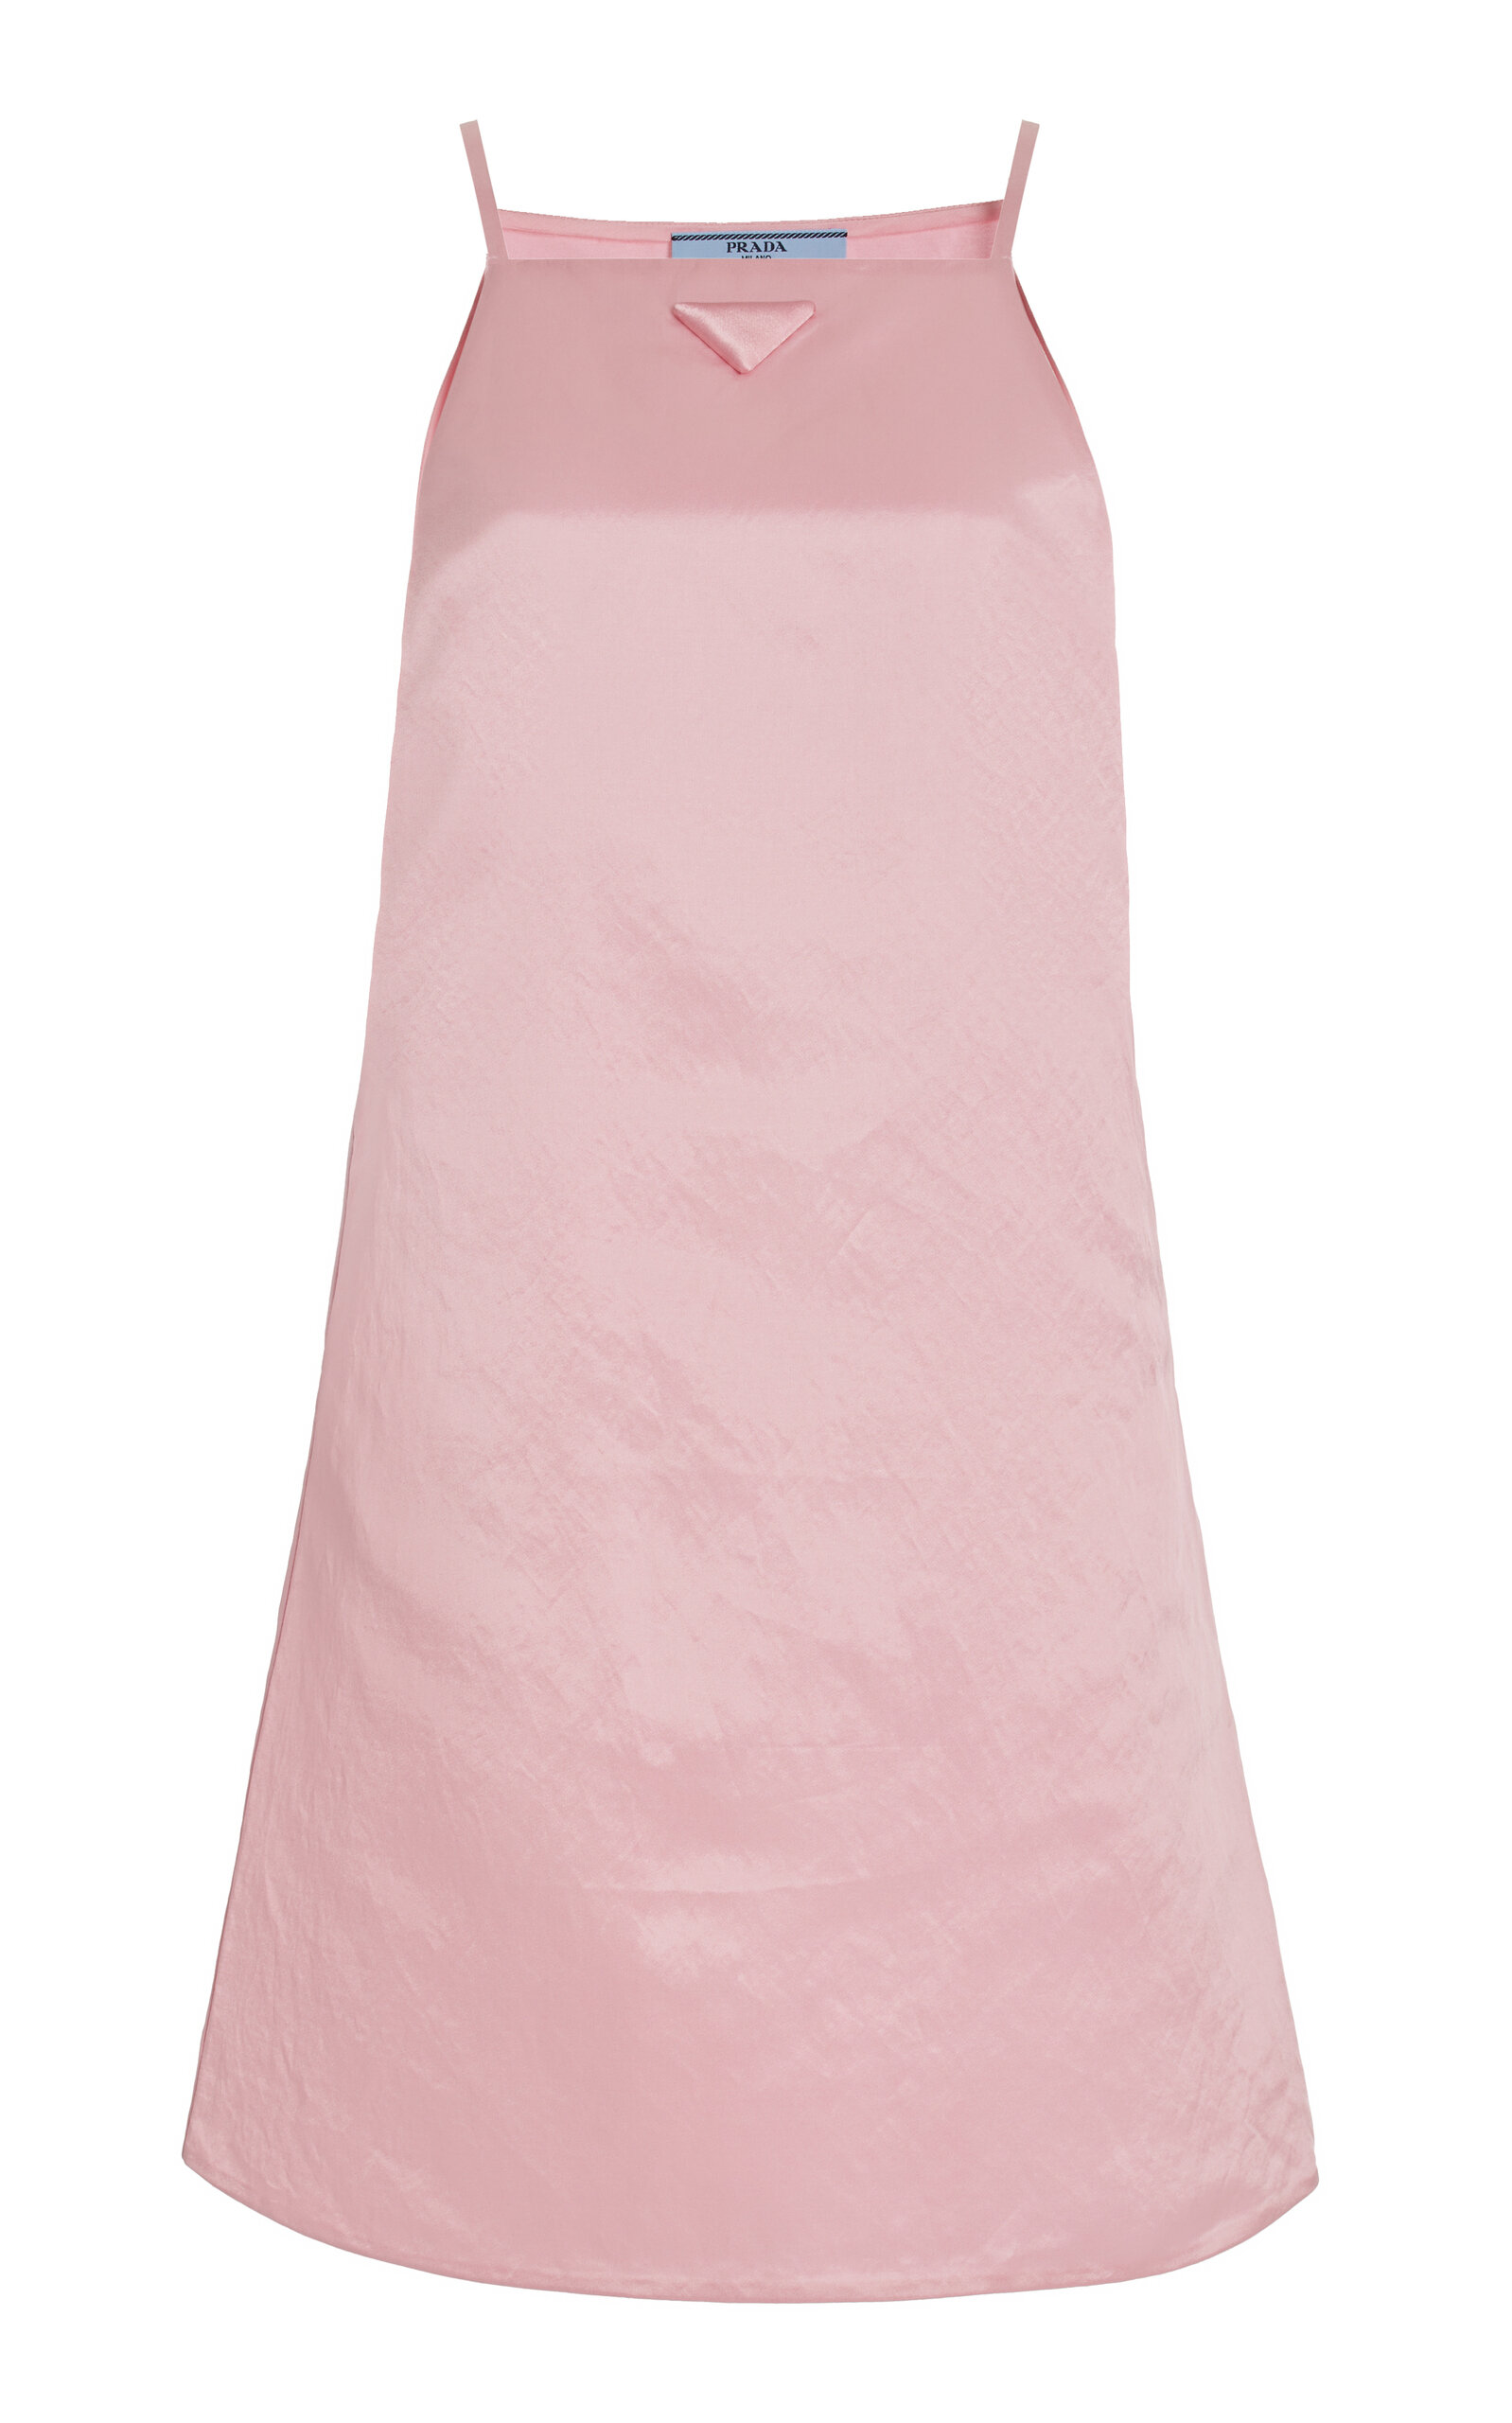 Prada - Satin Mini Dress - Pink - IT 36 - Moda Operandi